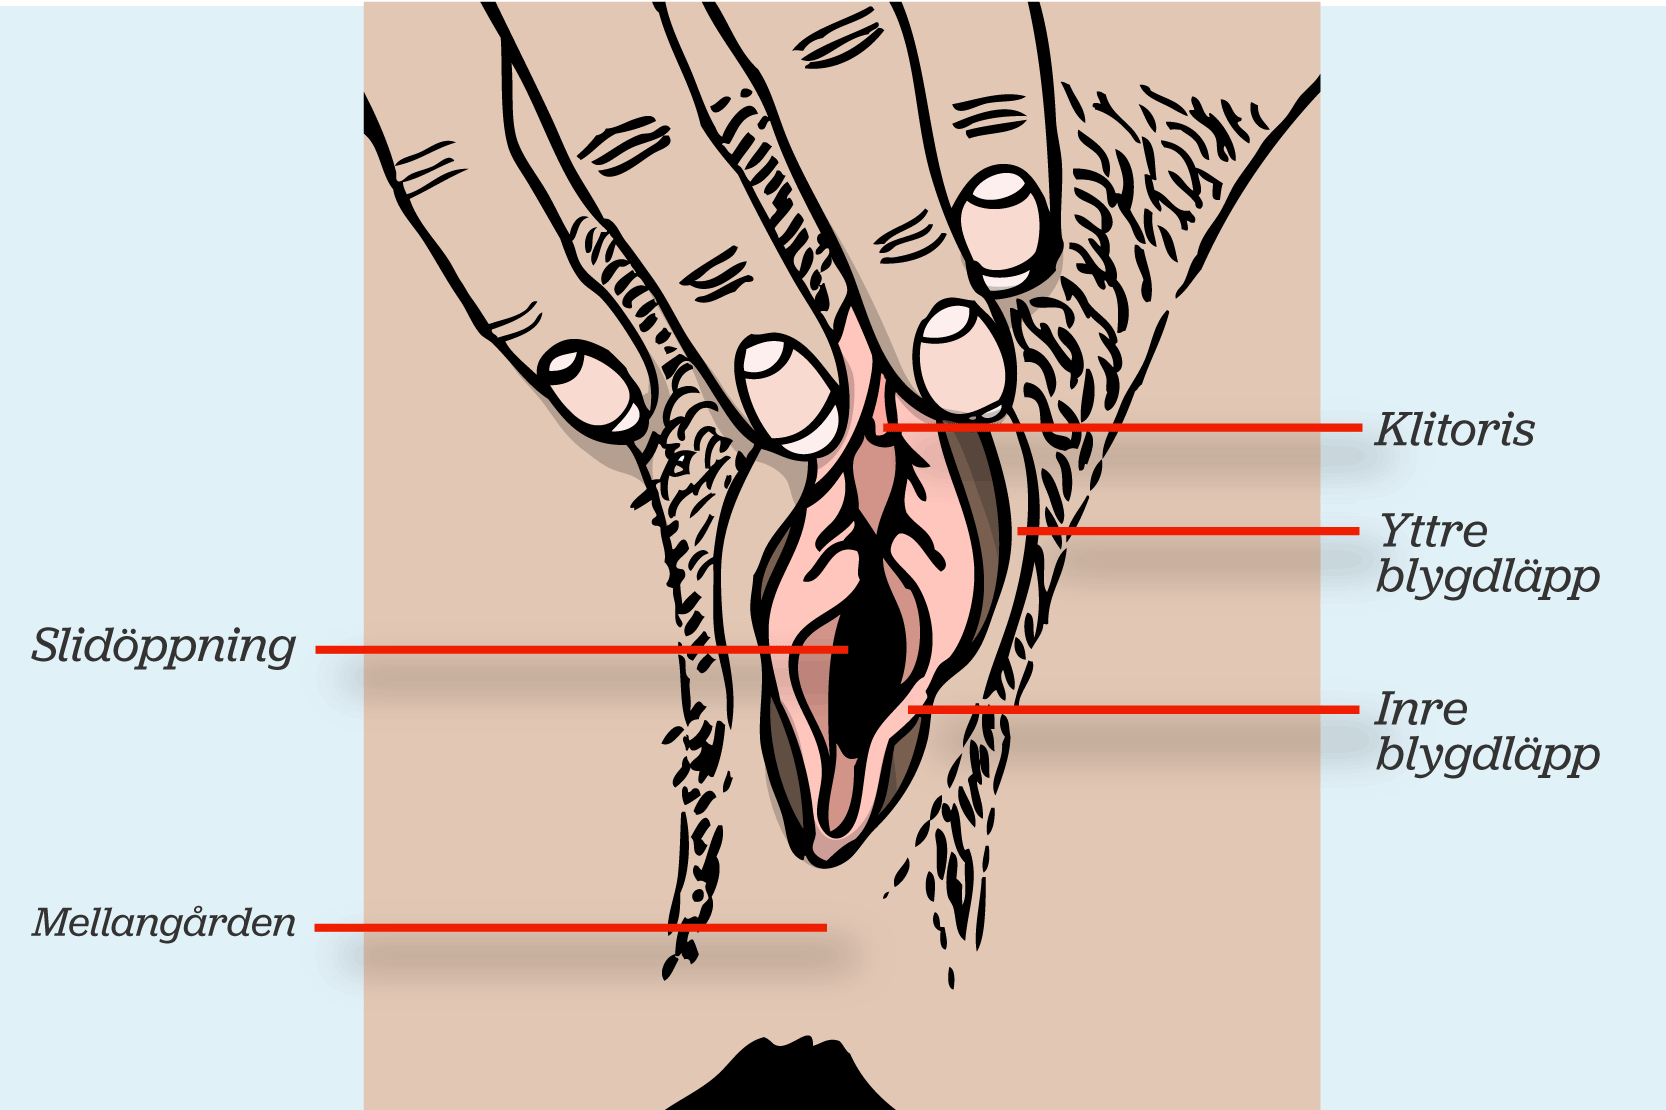 Snippans olika delar; klitoris, yttre blygdläpp, inre blygdläpp, slidöppning och mellangård. Illustration.